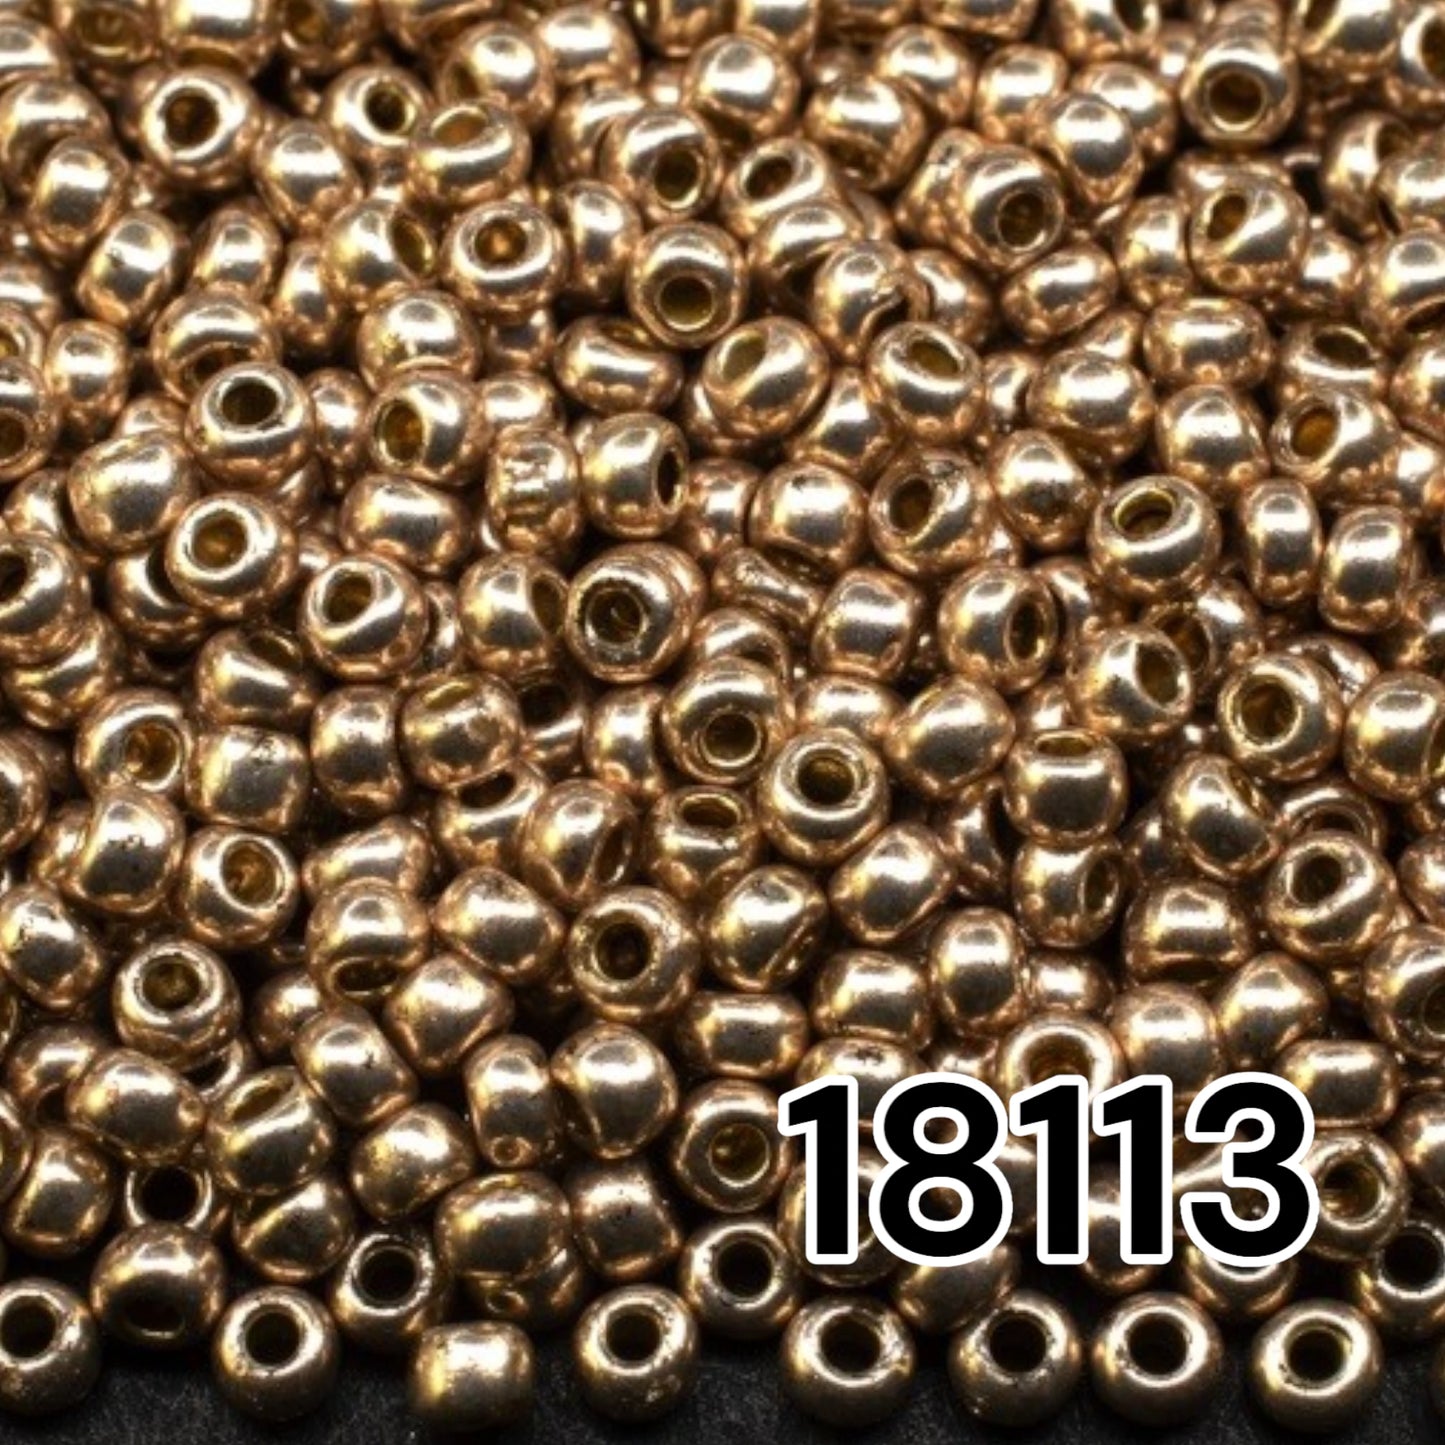 18113 Tschechische Rocailles PRECIOSA rund 10/0 Goldmetallic. Metallisch - Solgel.